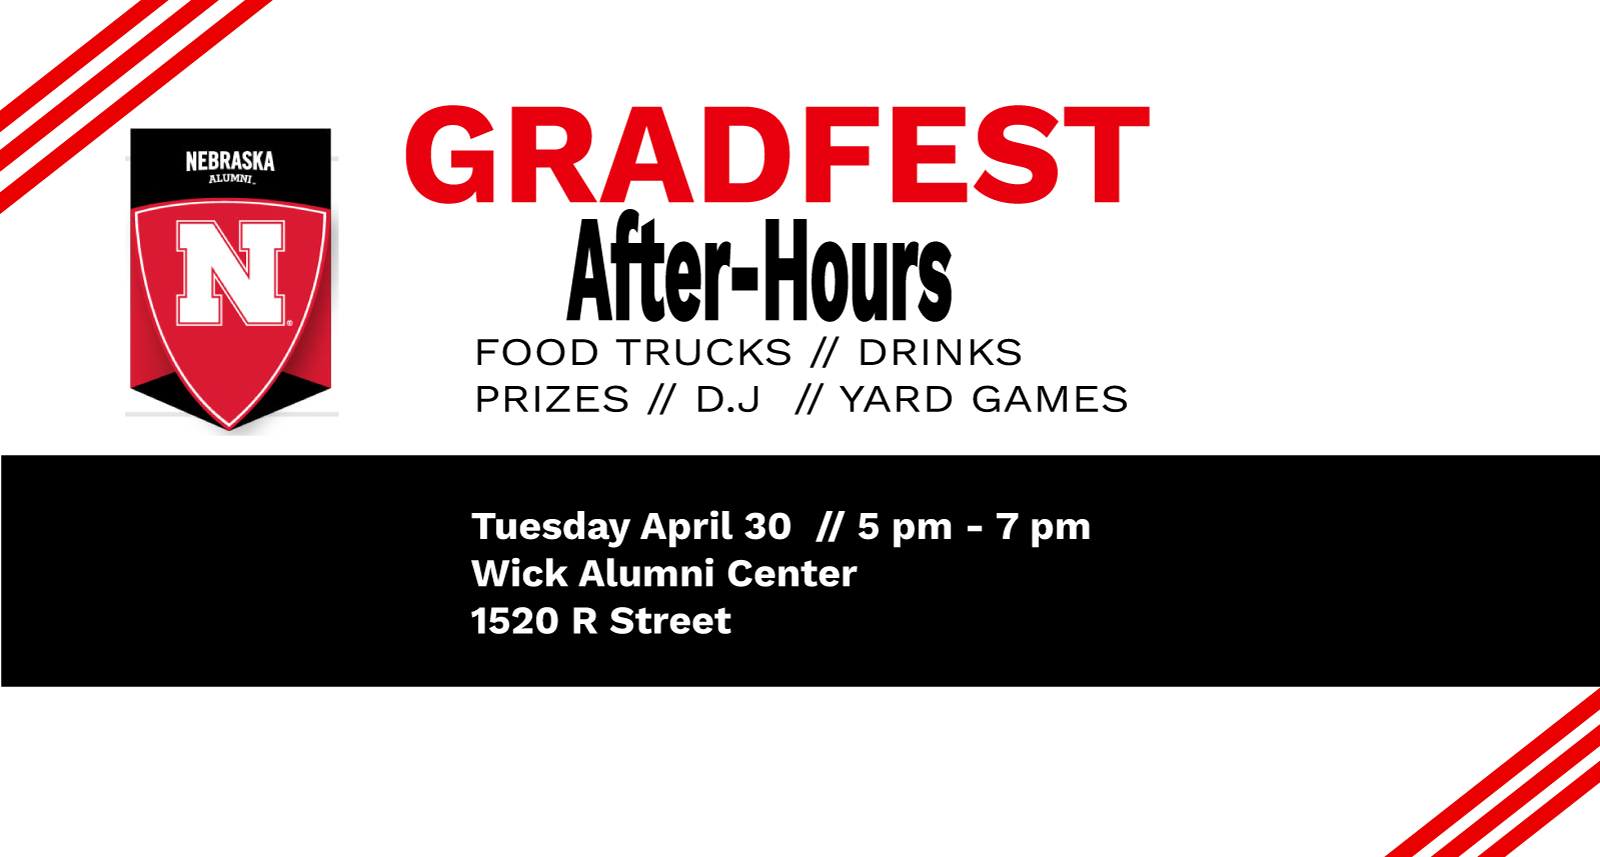 Gradfest After-Hours